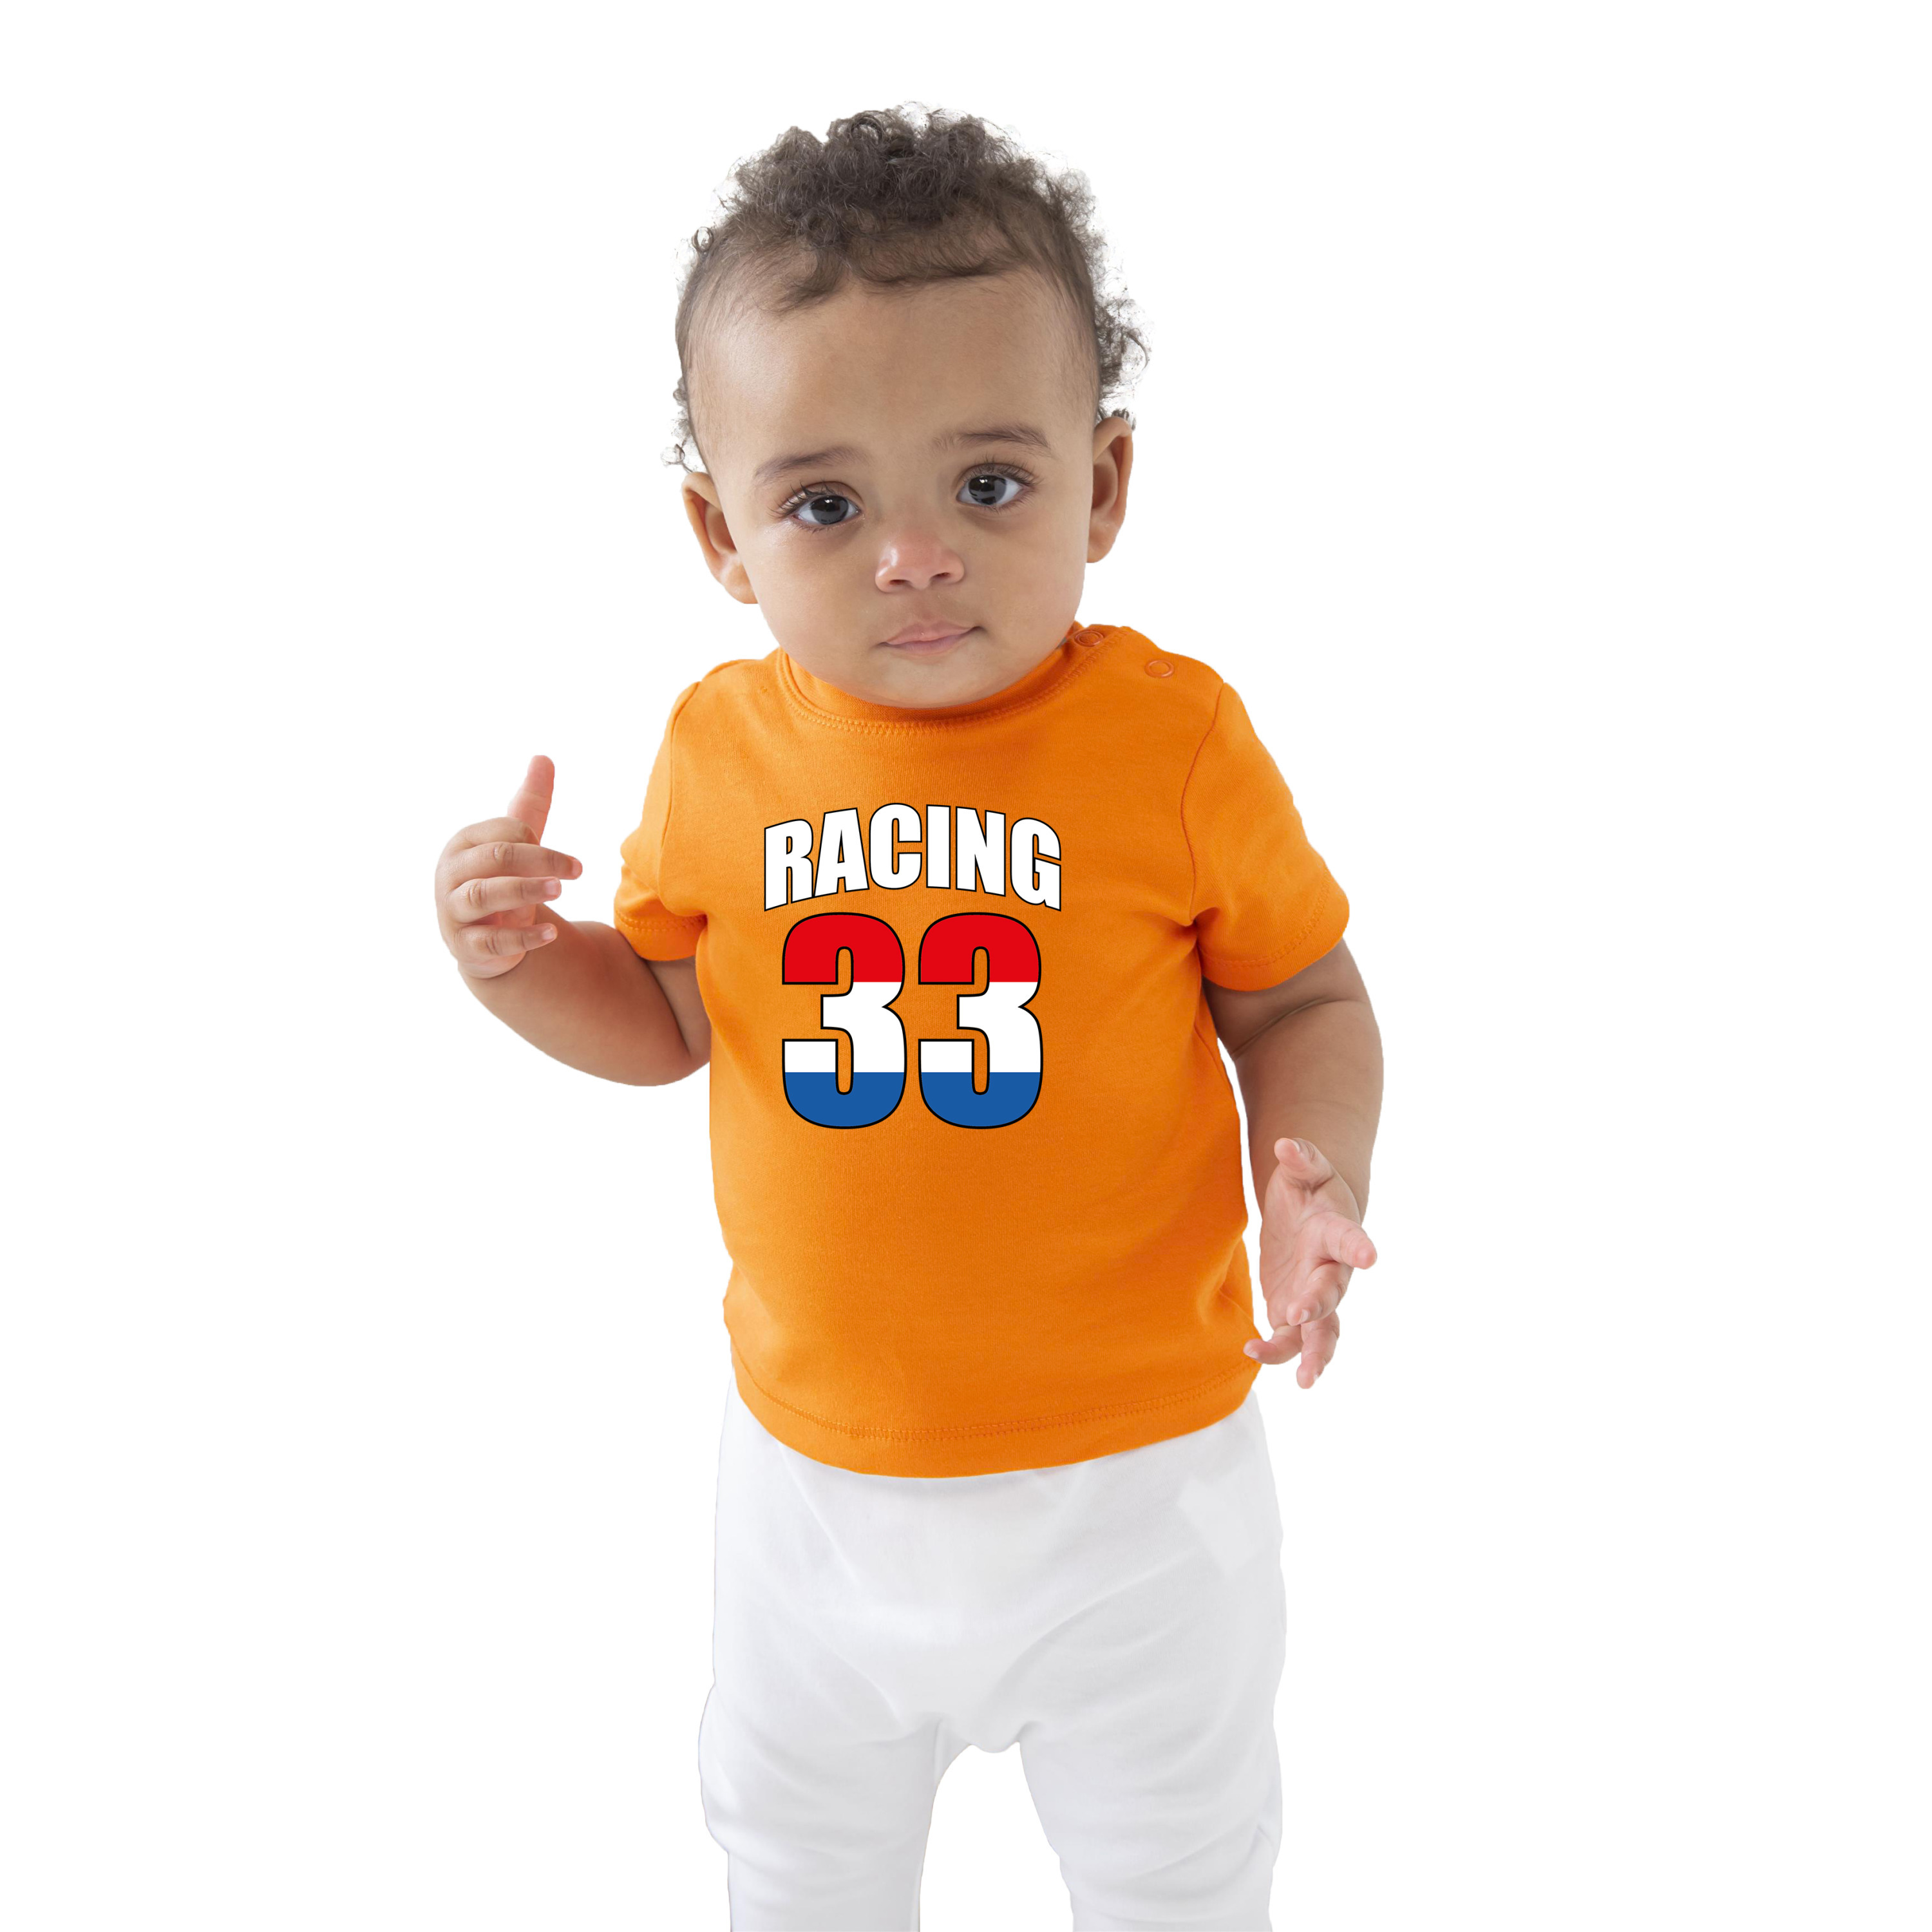 Oranje t-shirt racing 33 coureur supporter - race supporter voor baby - peuter